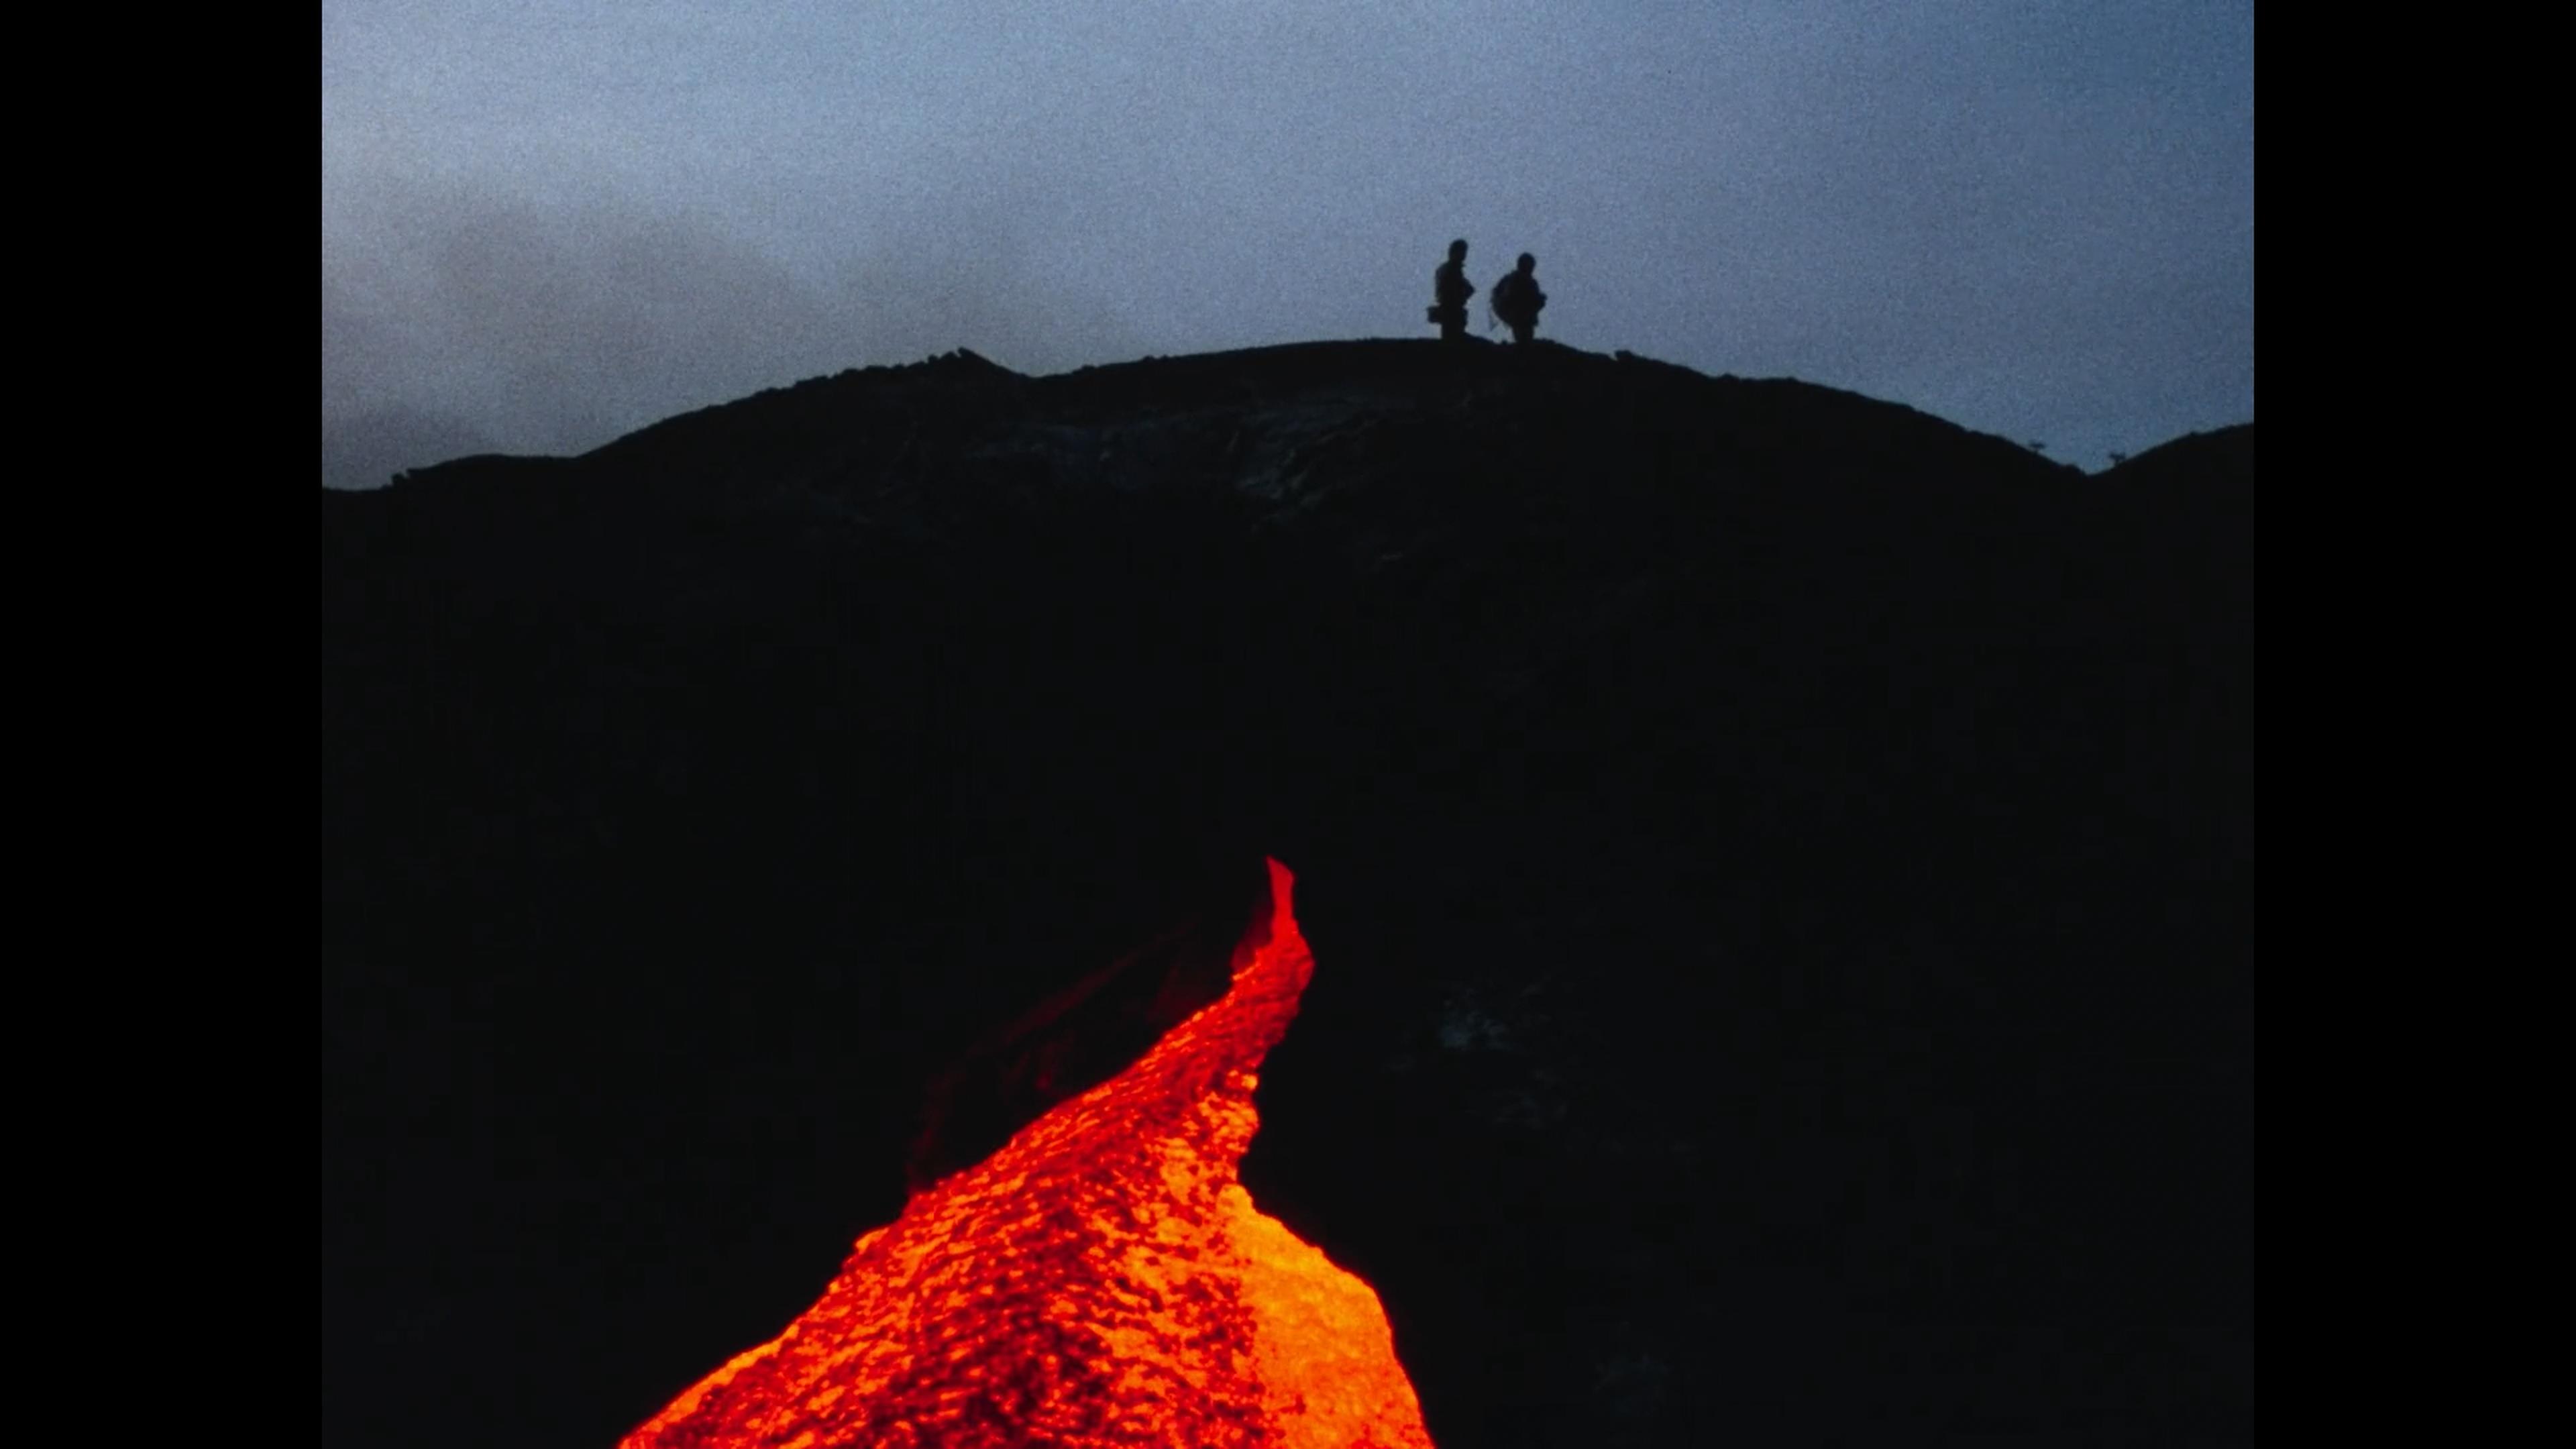 纪录片《火山挚恋》:即使归于尘土,我心永恒